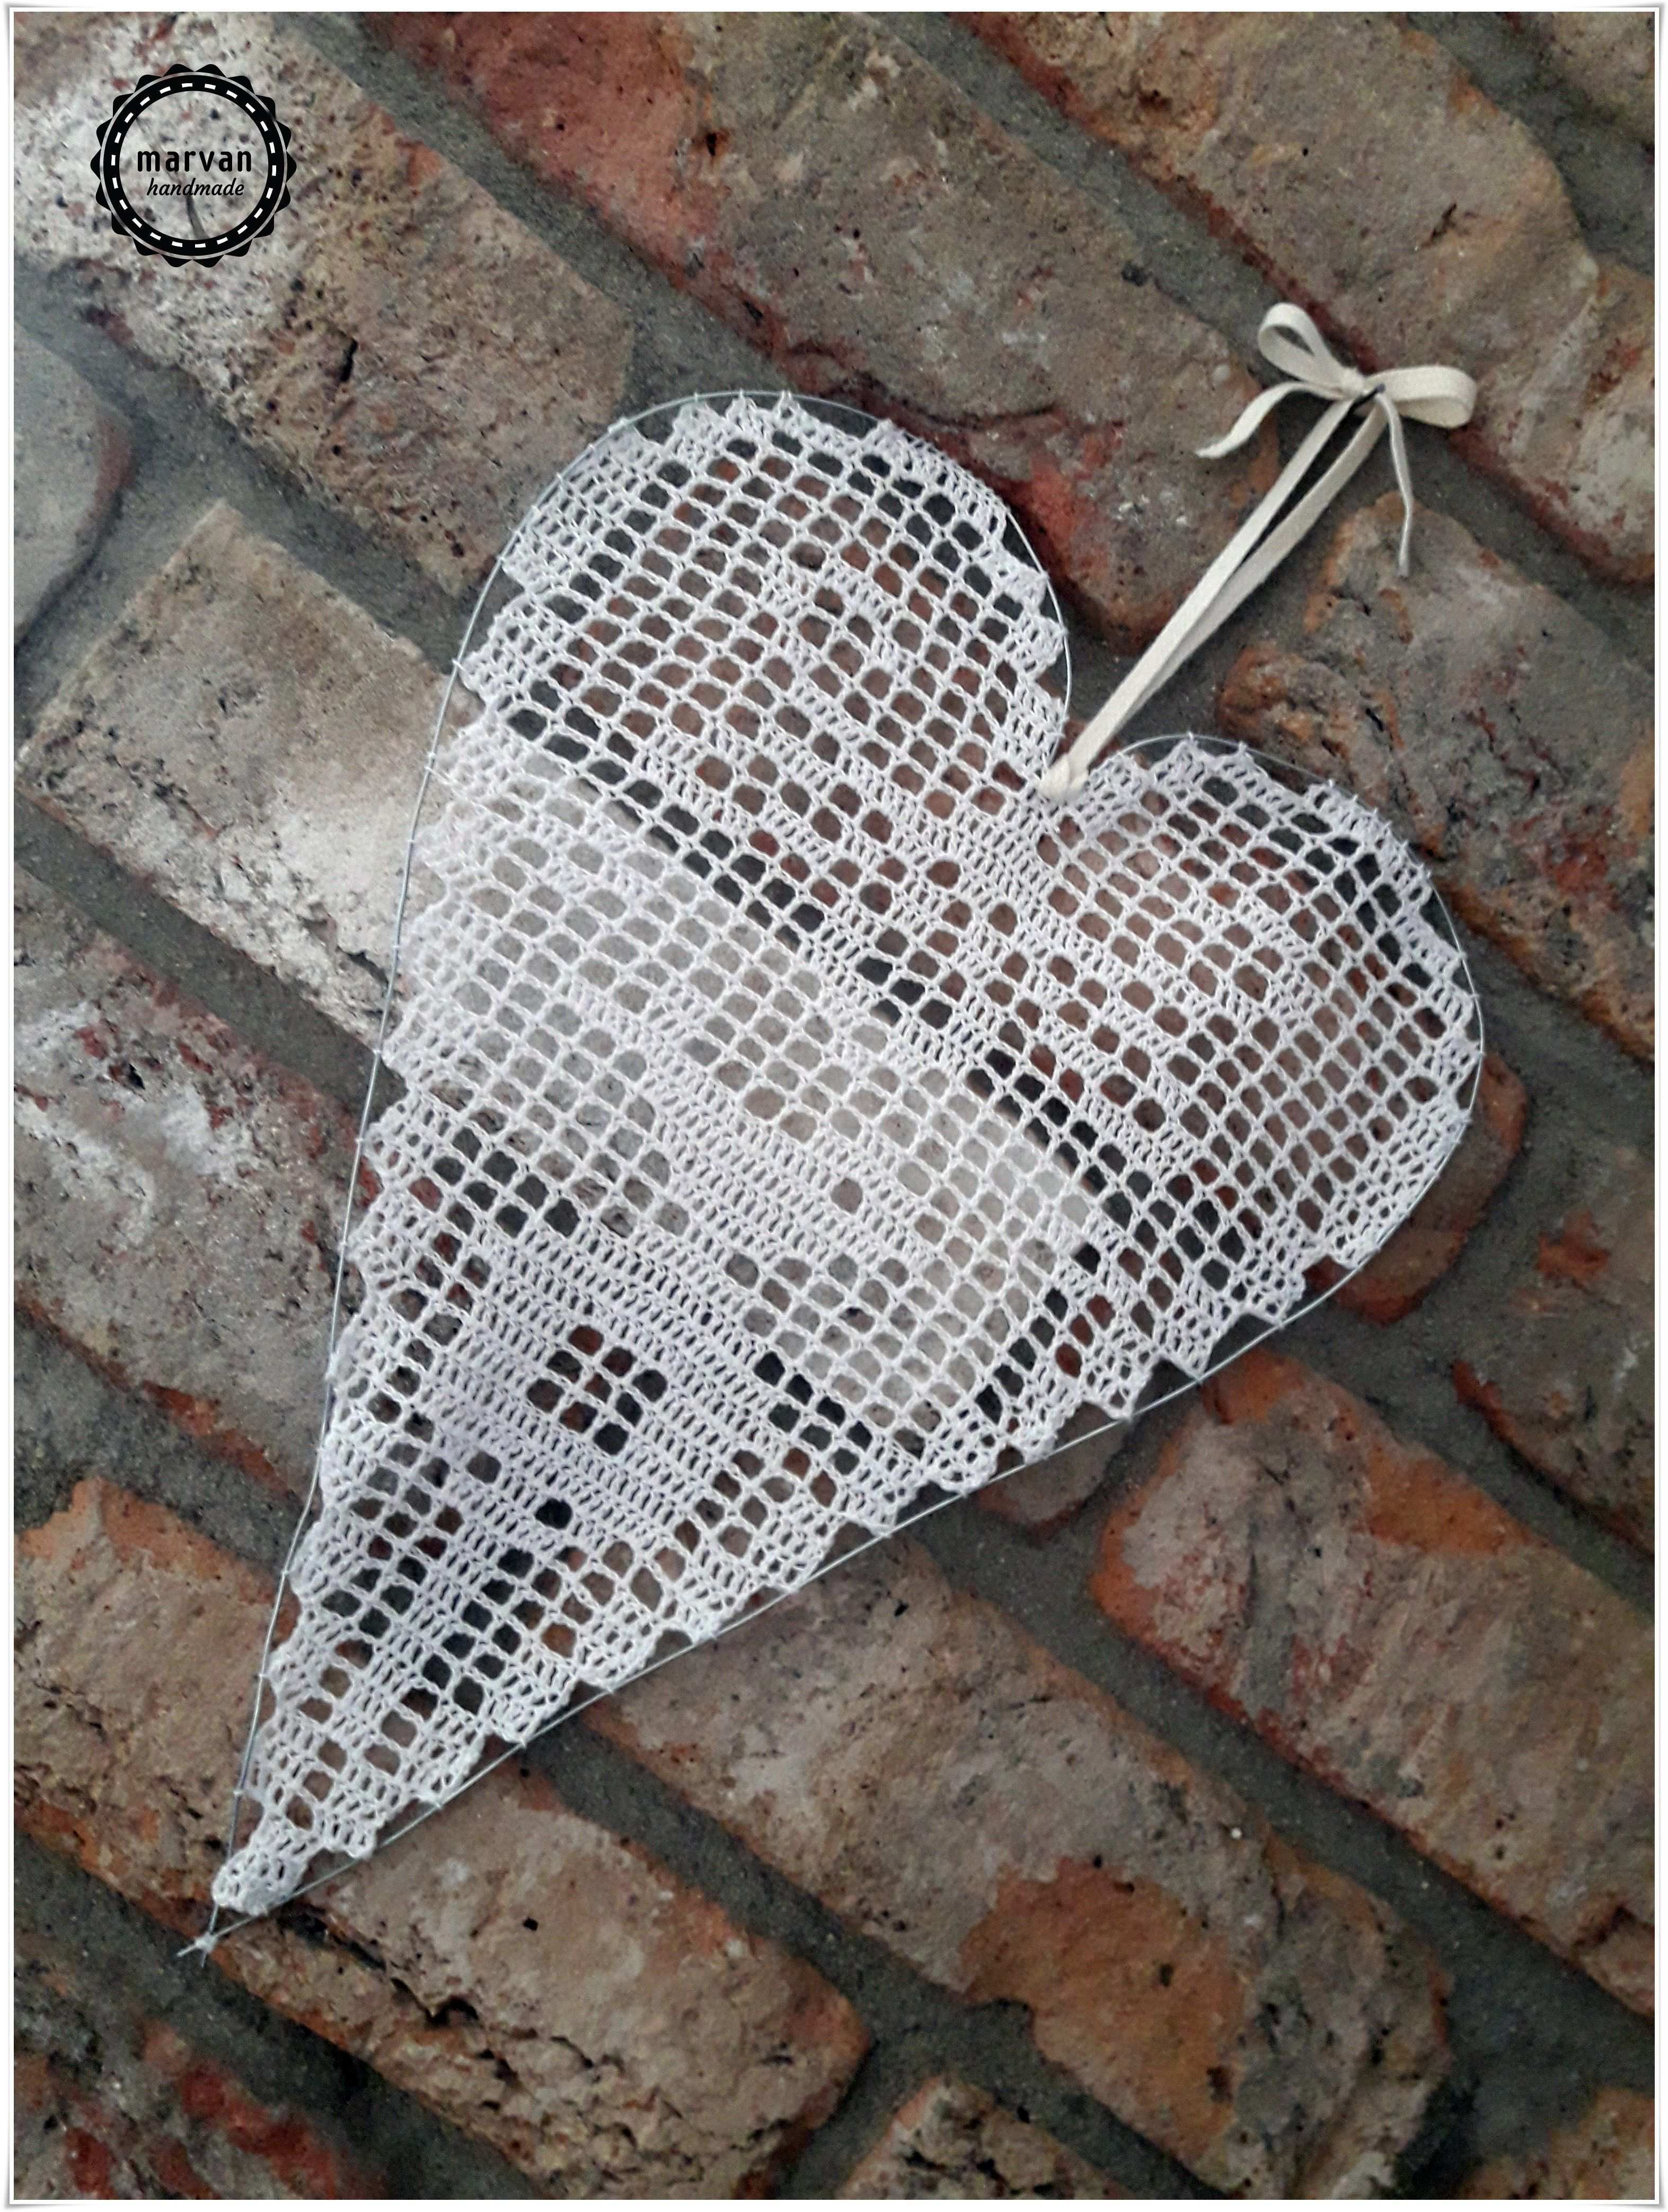 Filetove Srdiecko Filet Crochet Heart In 2020 Filet Crochet Crochet Crochet Heart